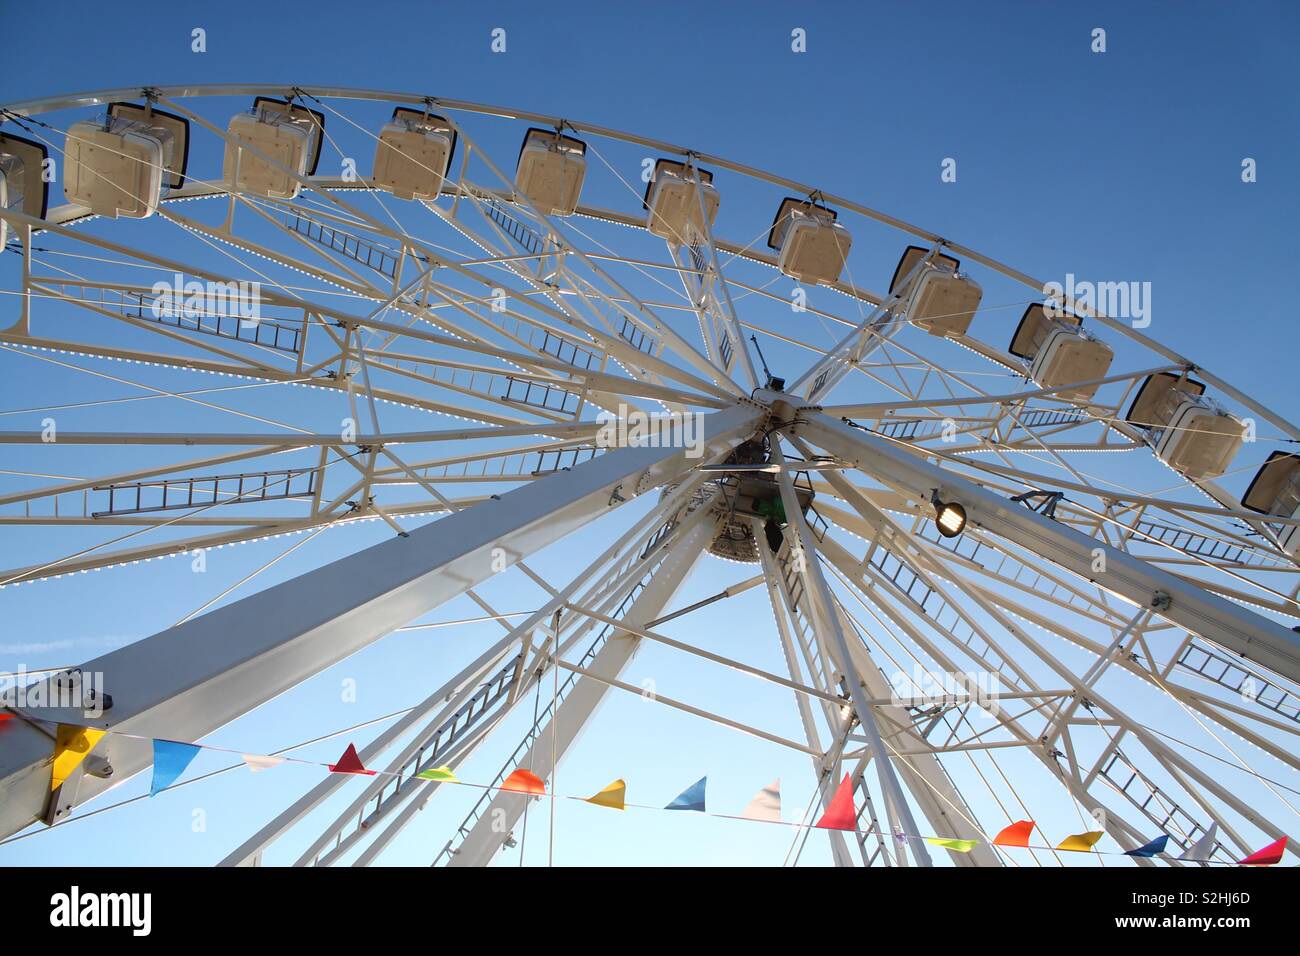 Ferris wheel in Barry Pleasure Park, Wales Stock Photo